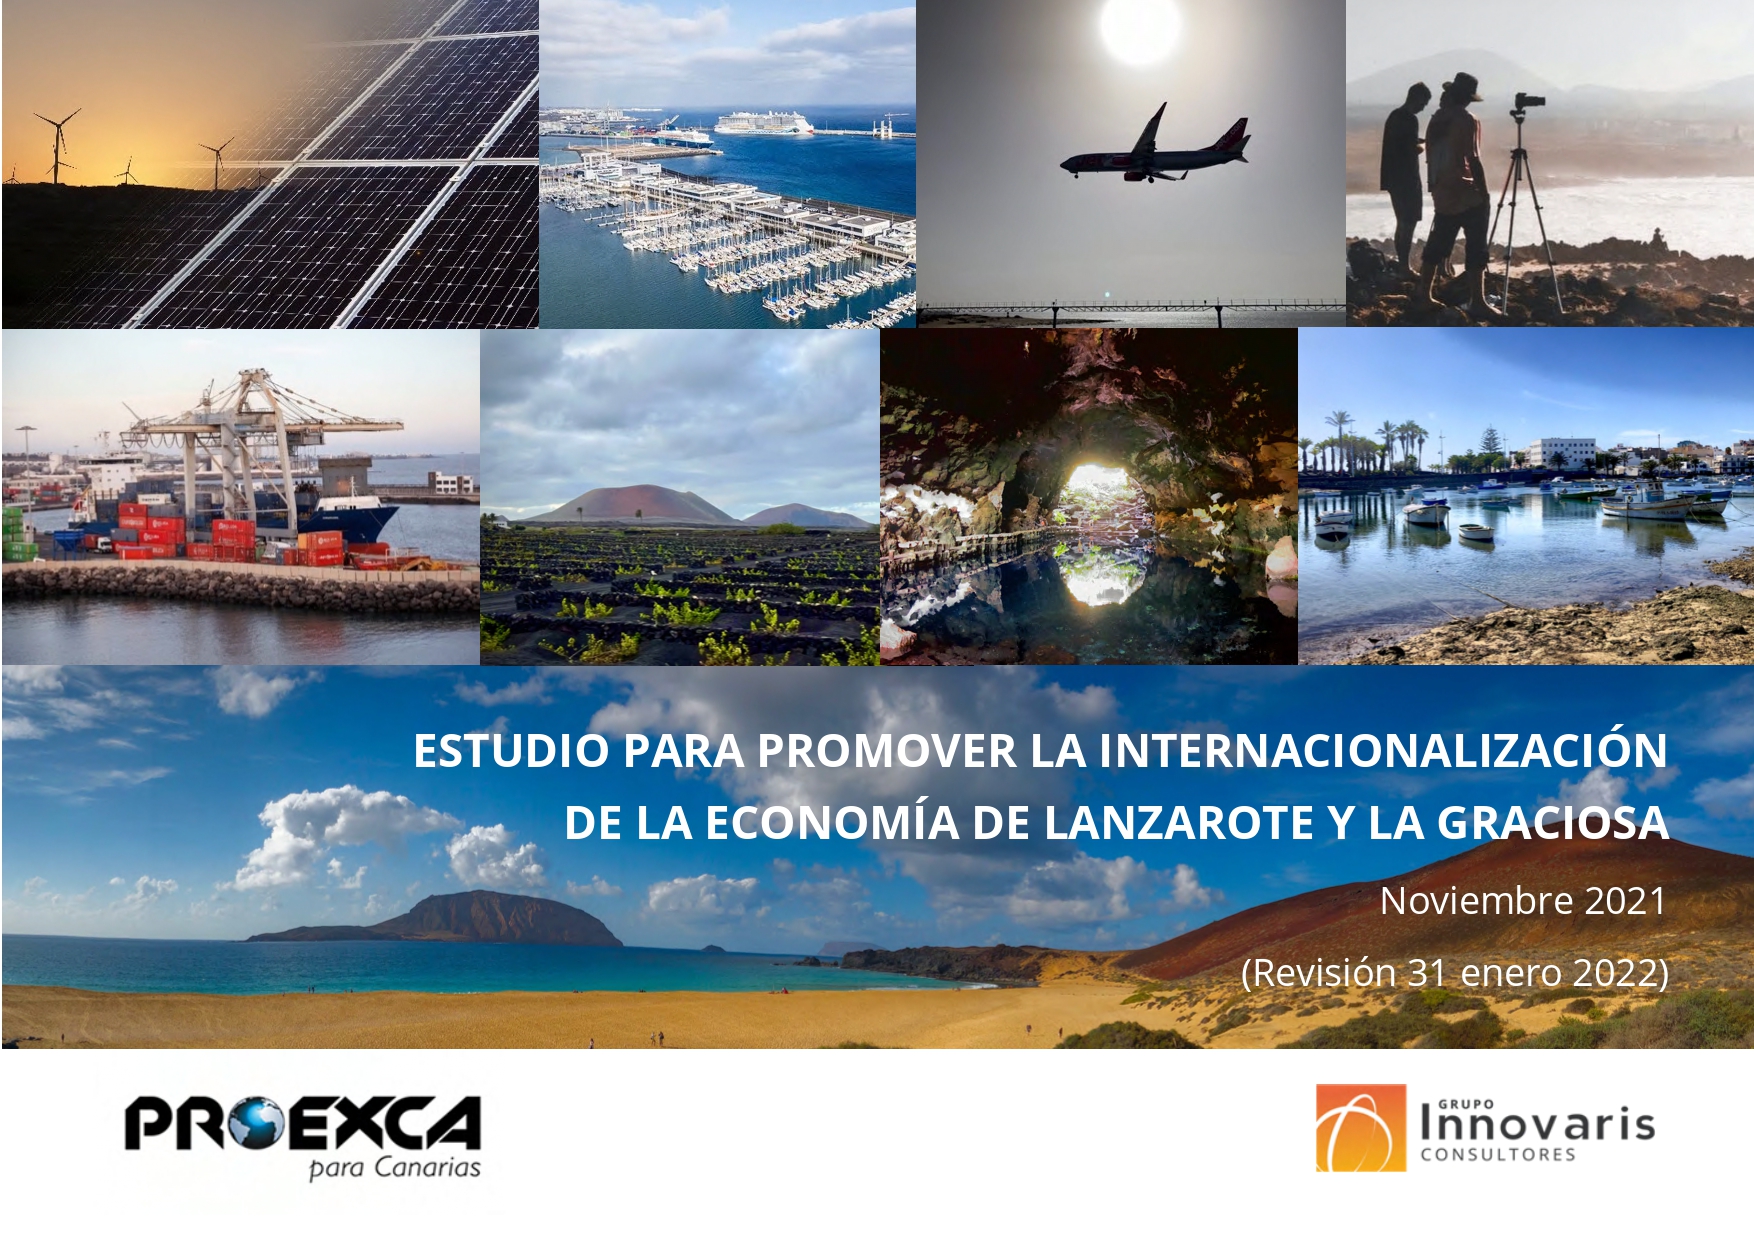 Estudio para promover la internacionalización de la economía de Lanzarote y La Graciosa